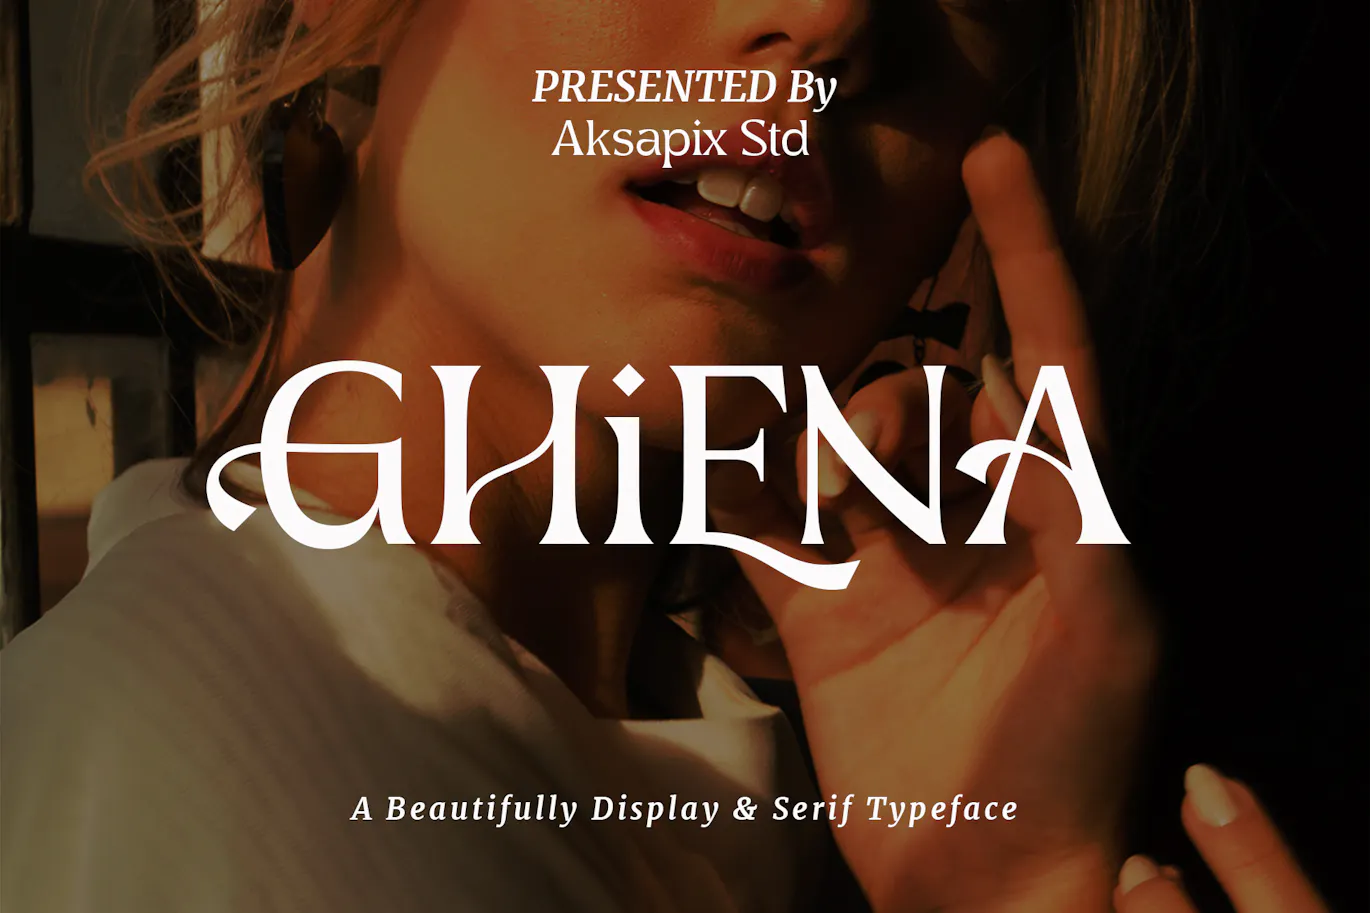 非常的精致优美可用于贺卡设计的英文字体 Ghiena - Display Serif Typeface 设计字体 第1张